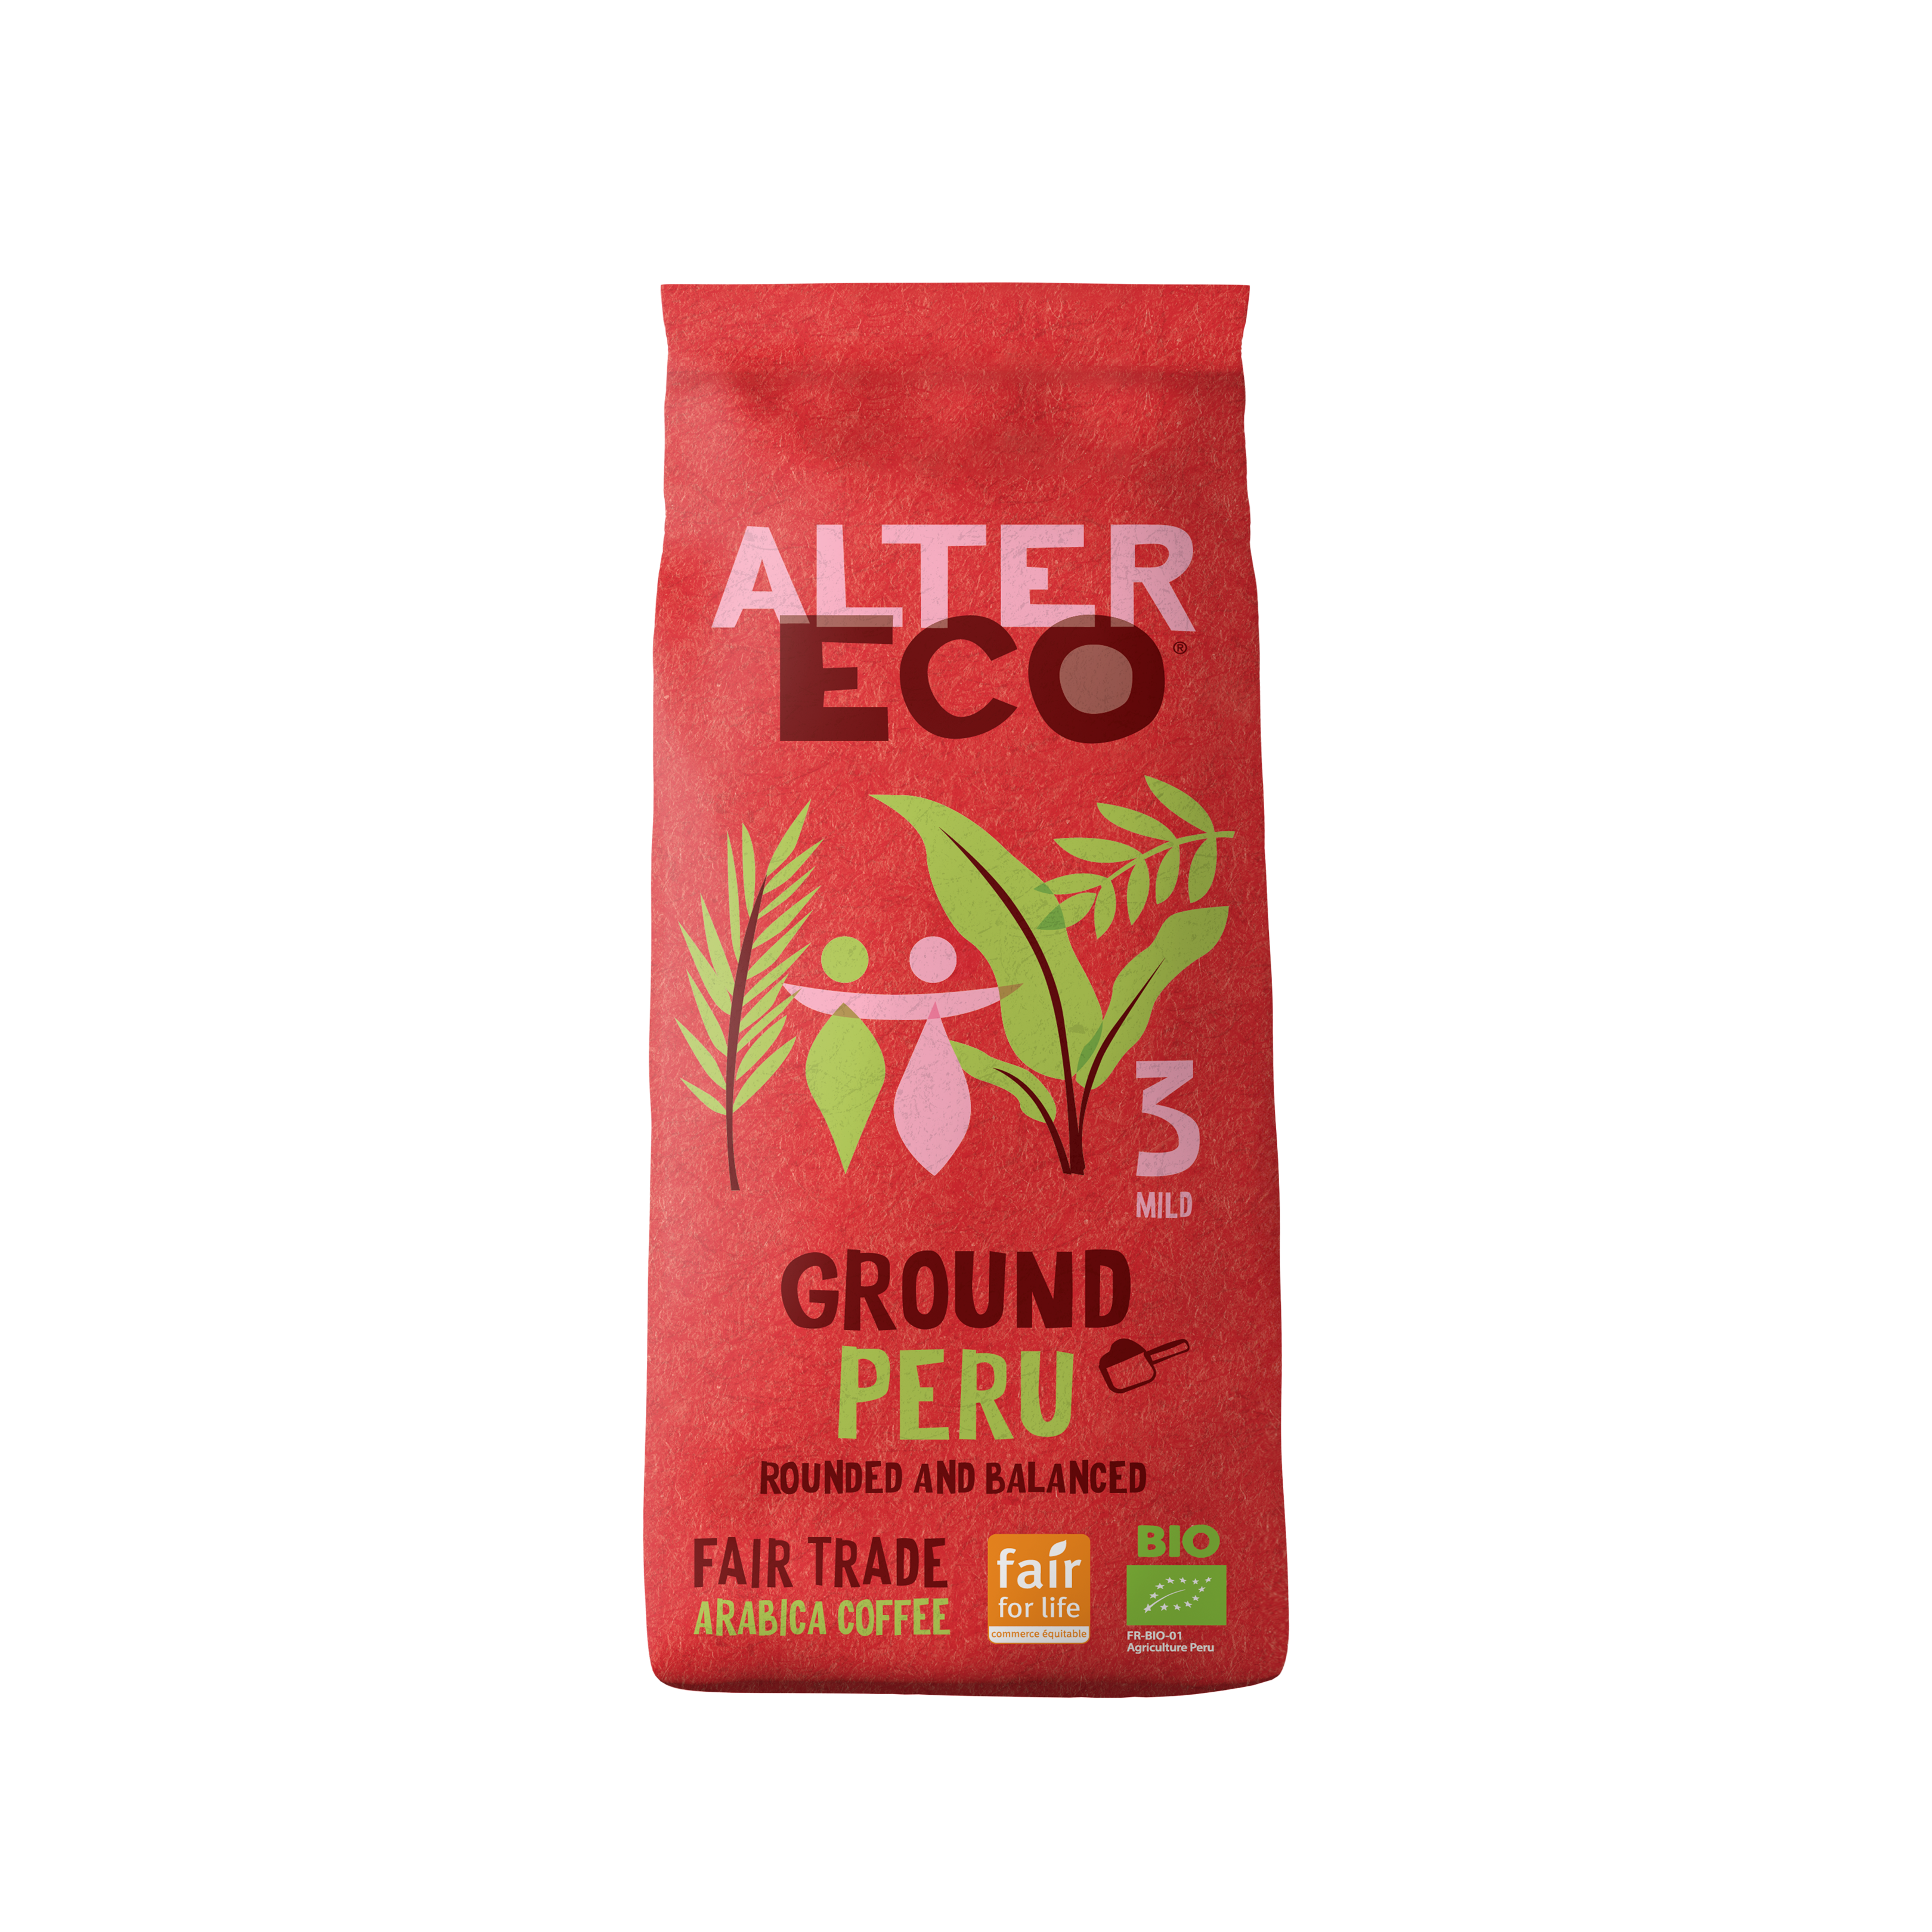 Alter Eco - Ground Peru - Front